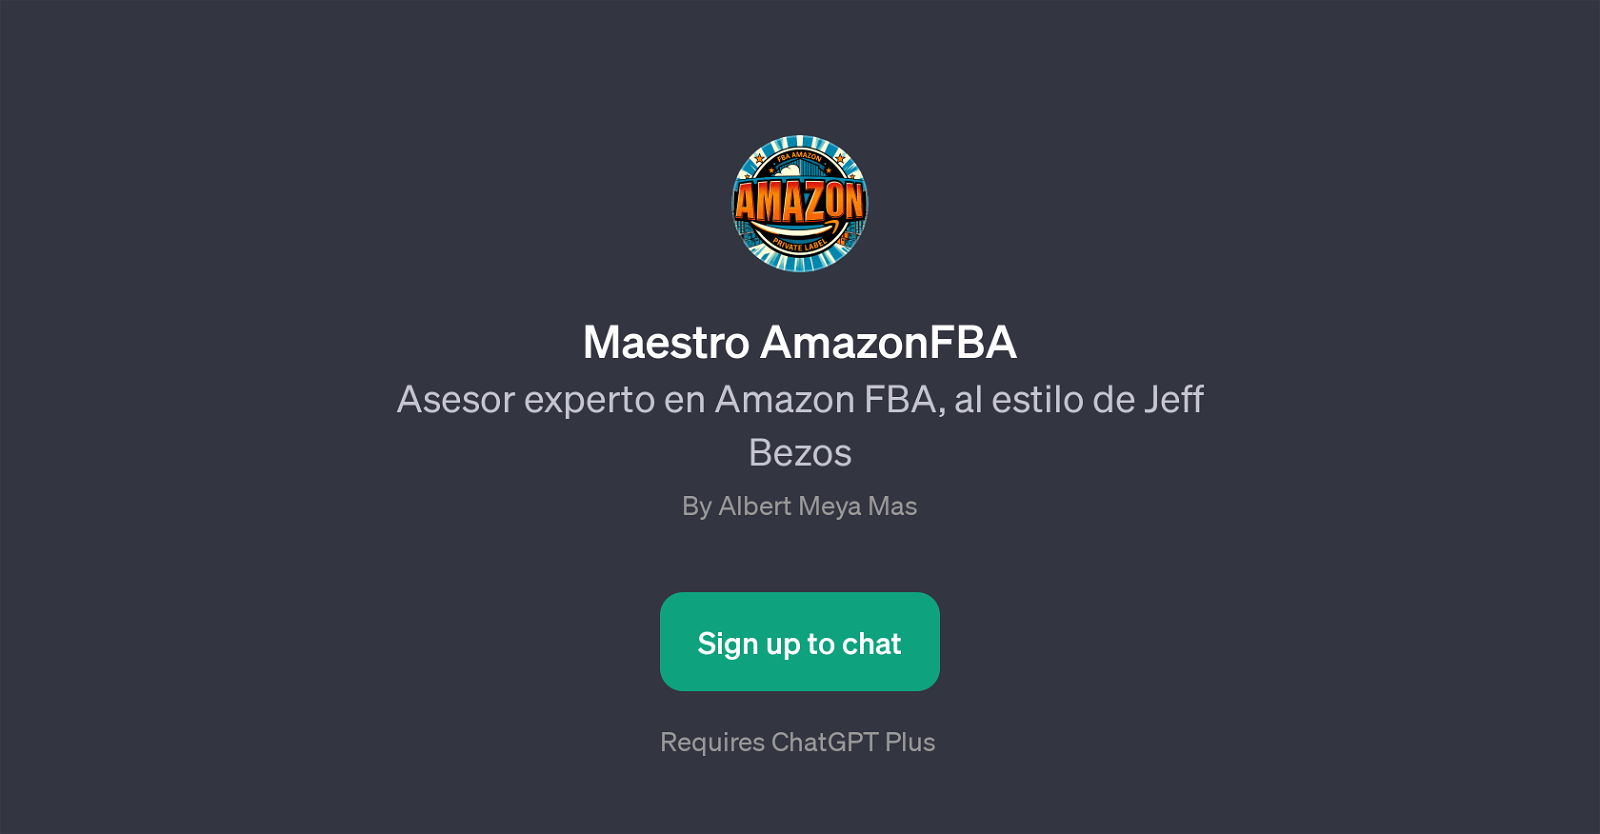 Maestro AmazonFBA website